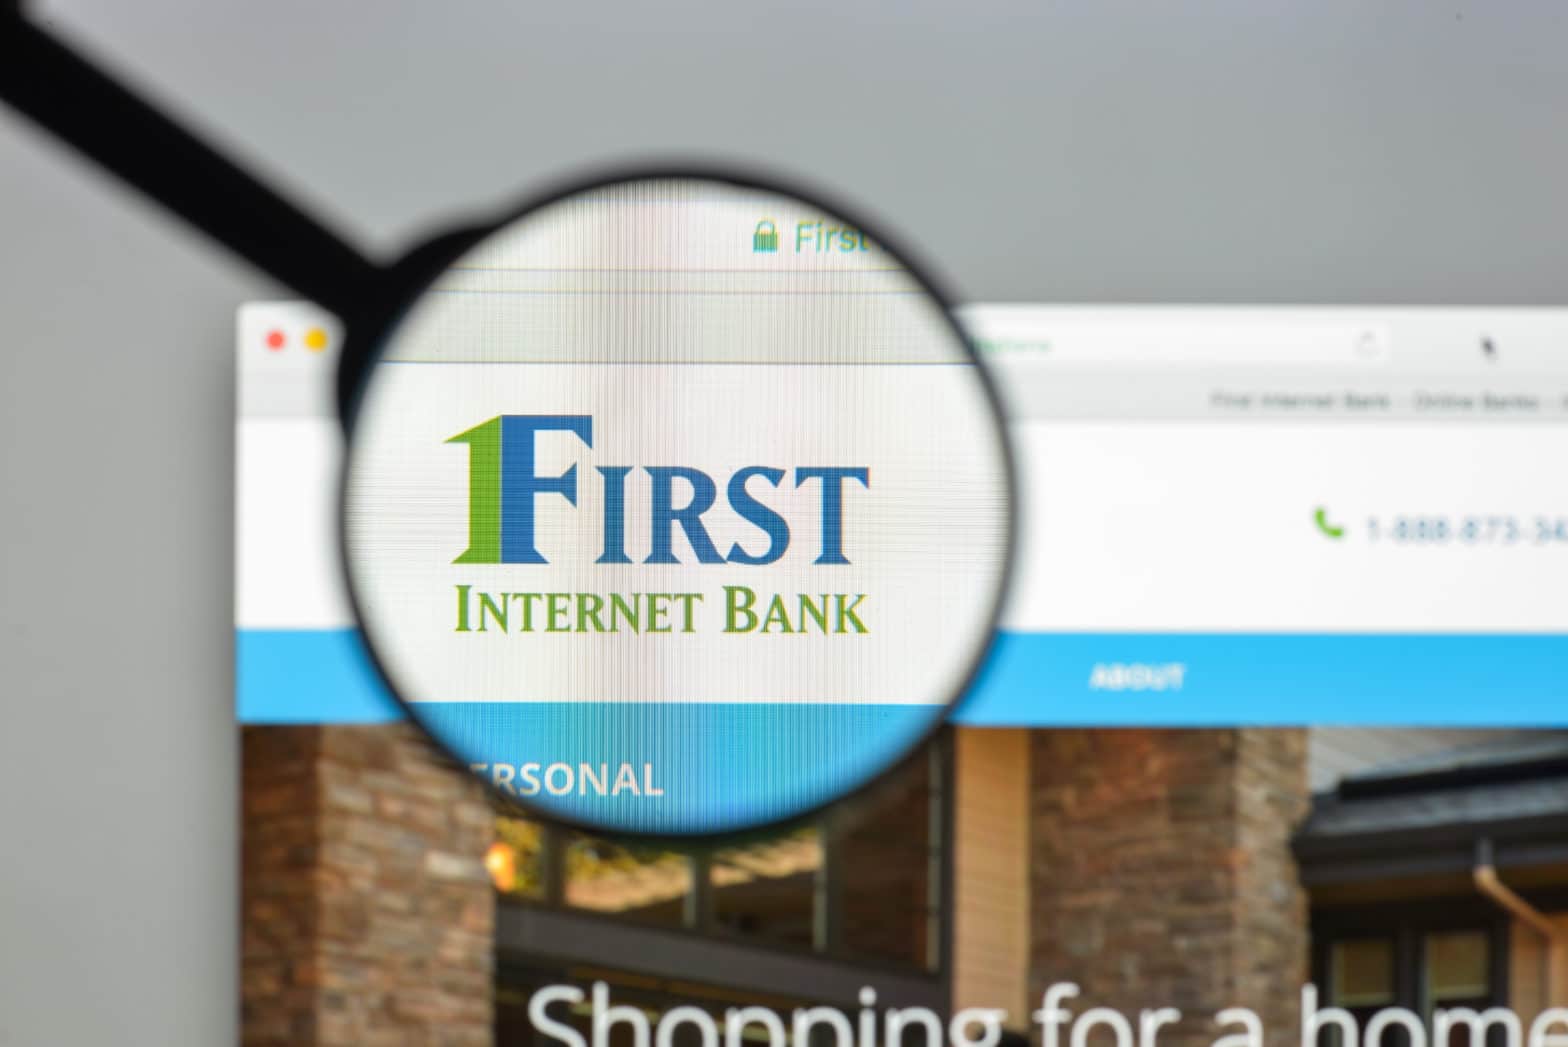 first internet bank